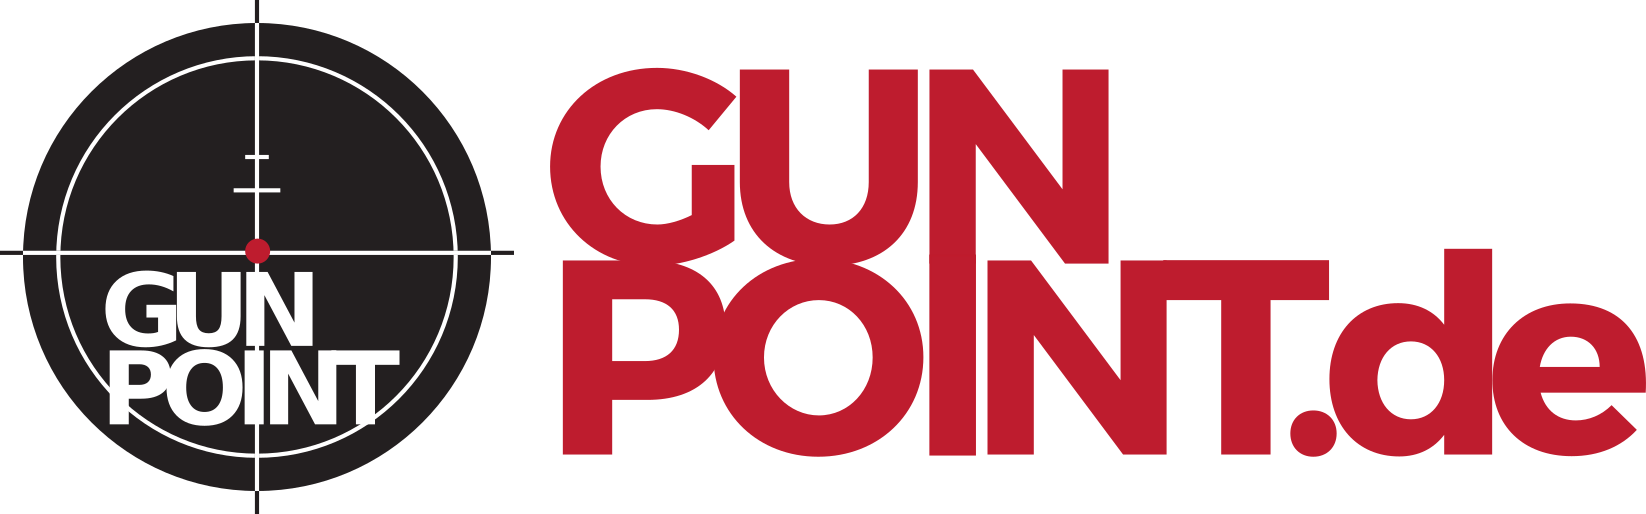 GunPoint